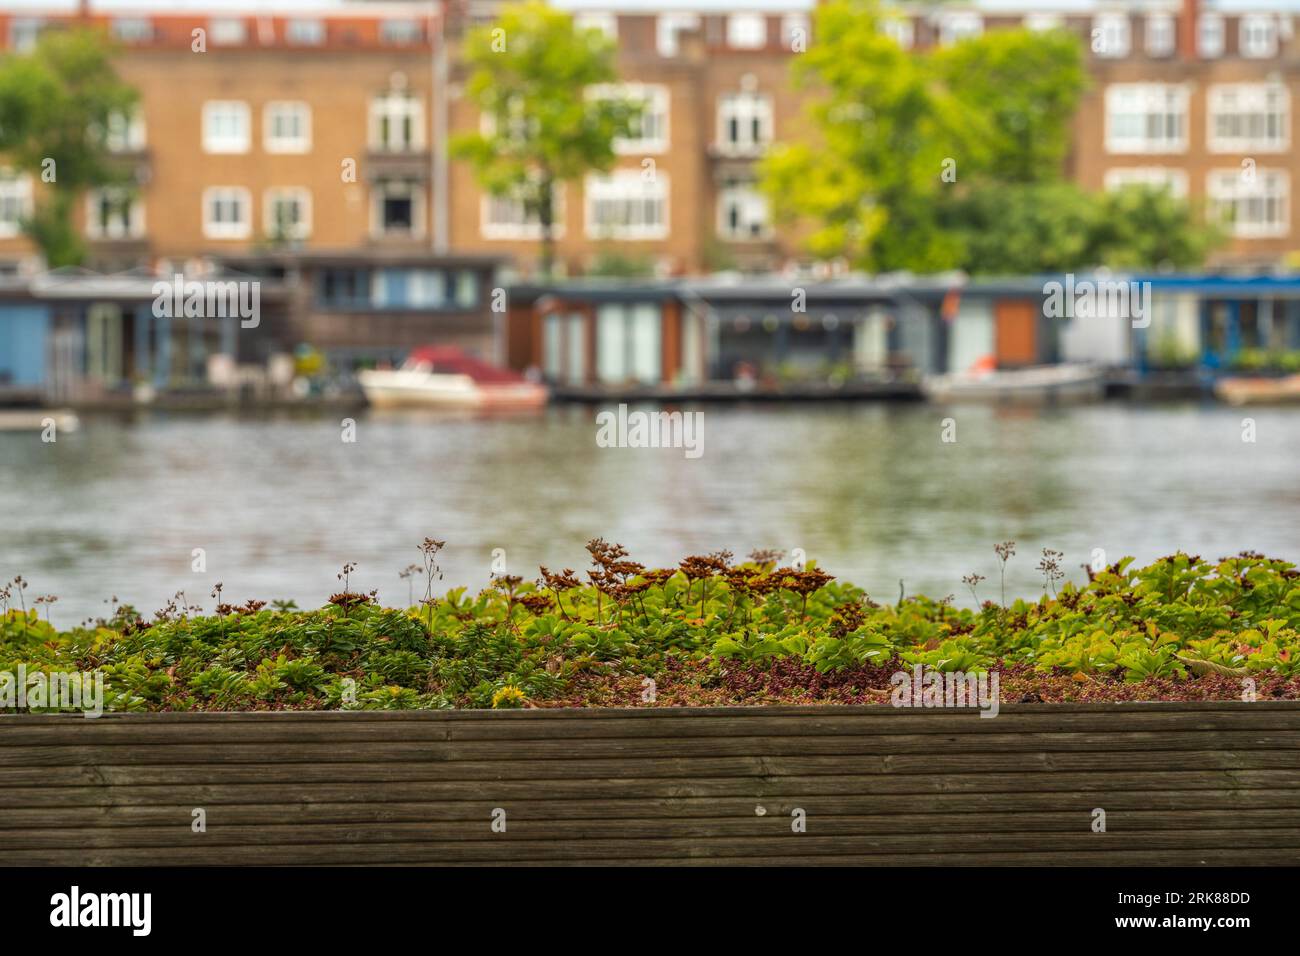 Dettaglio del tetto verde con varietà di piante. Fiume Amstel e case galleggianti sullo sfondo, concentrazione selettiva Foto Stock